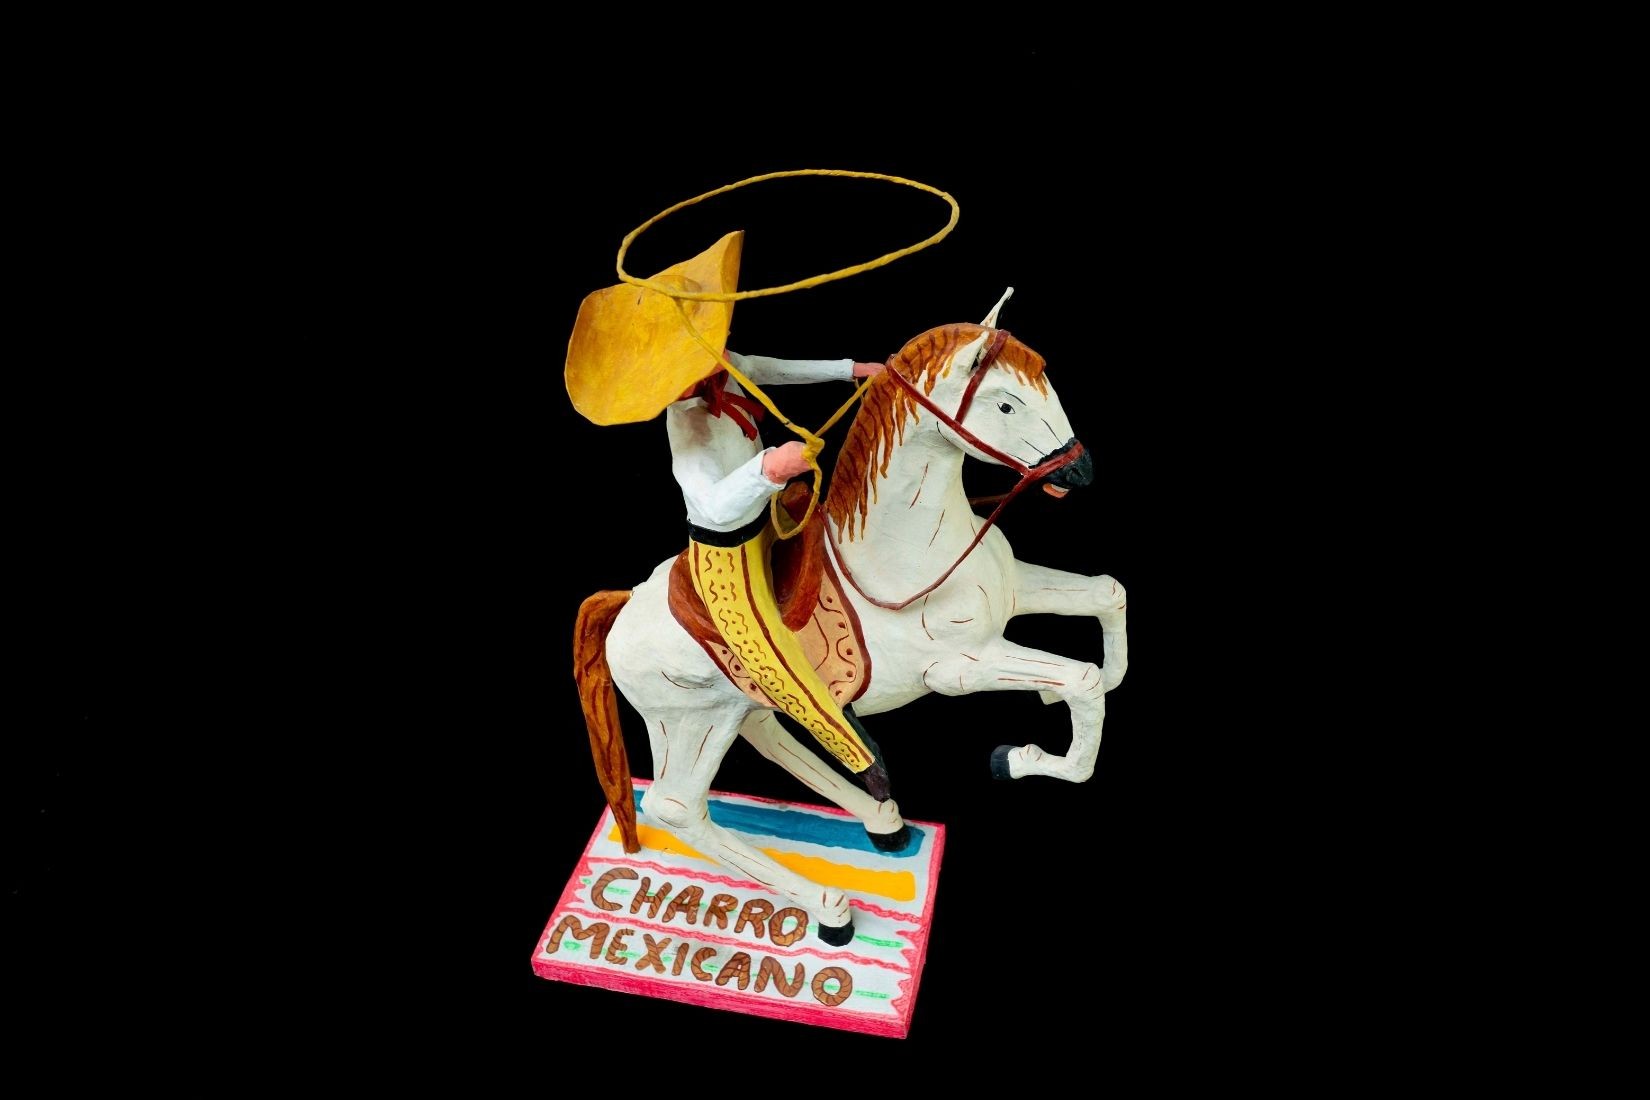 Charro mexicano con caballo. Papel aglutinado y policromado. Artesano José Luis Díaz García. San Gabriel Popocatla, Tlax. 1997. Col. Part. (Foto: EKV).